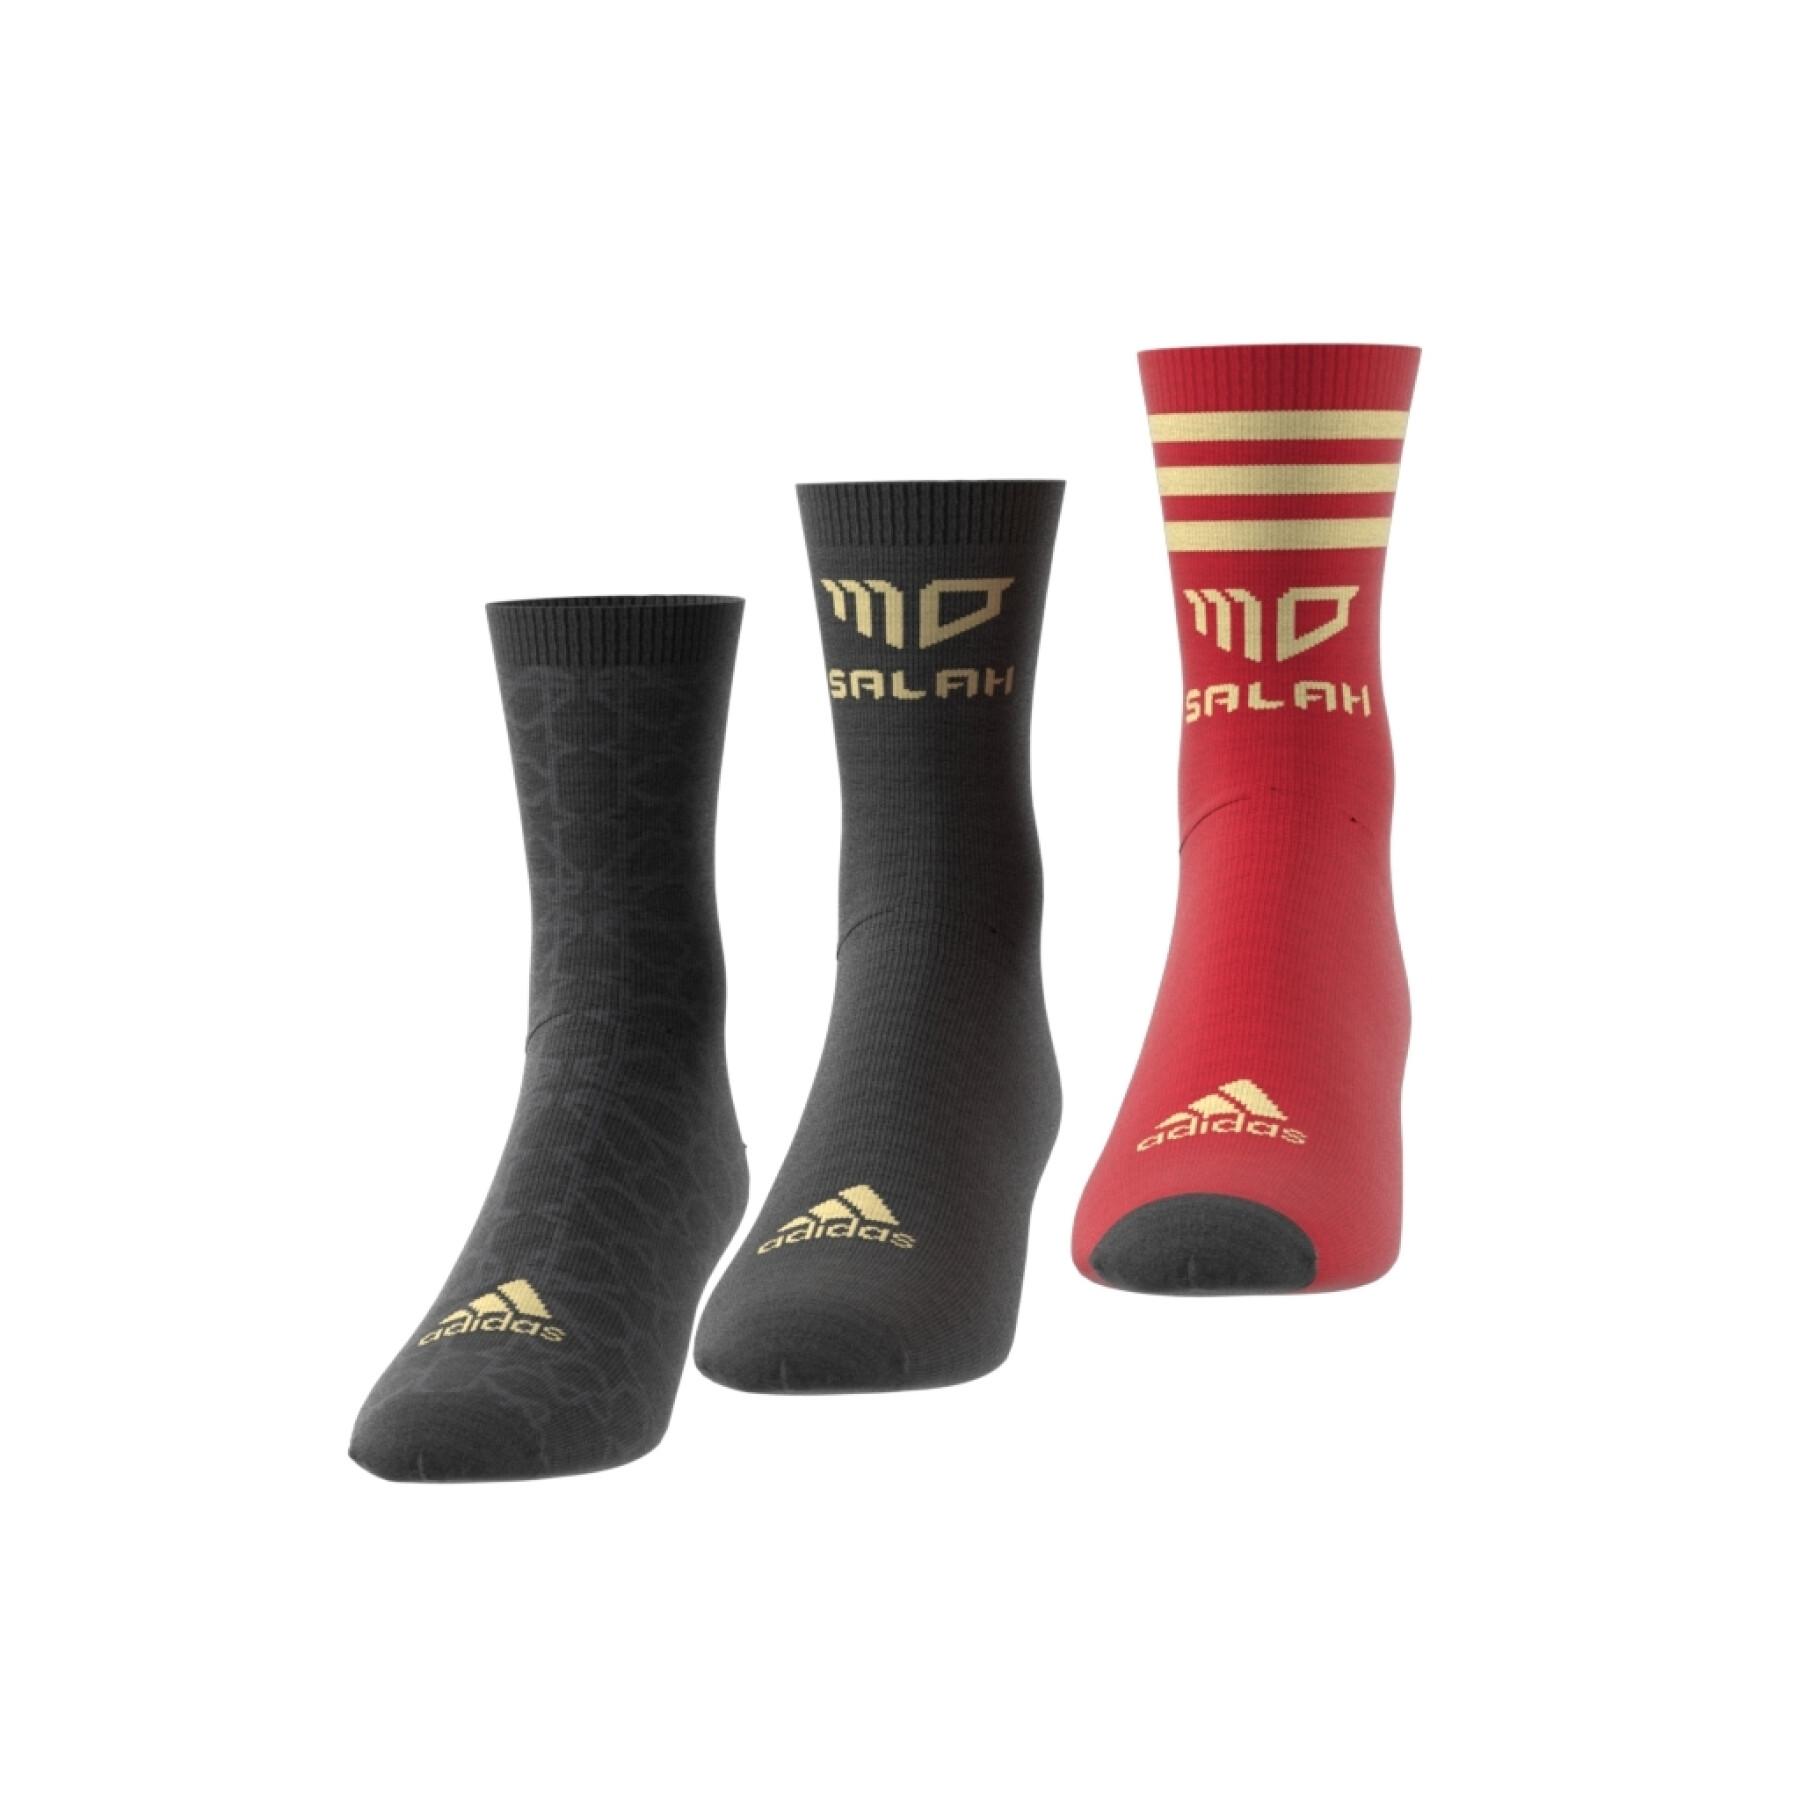 Children's socks adidas Mohammed Salah (x3)